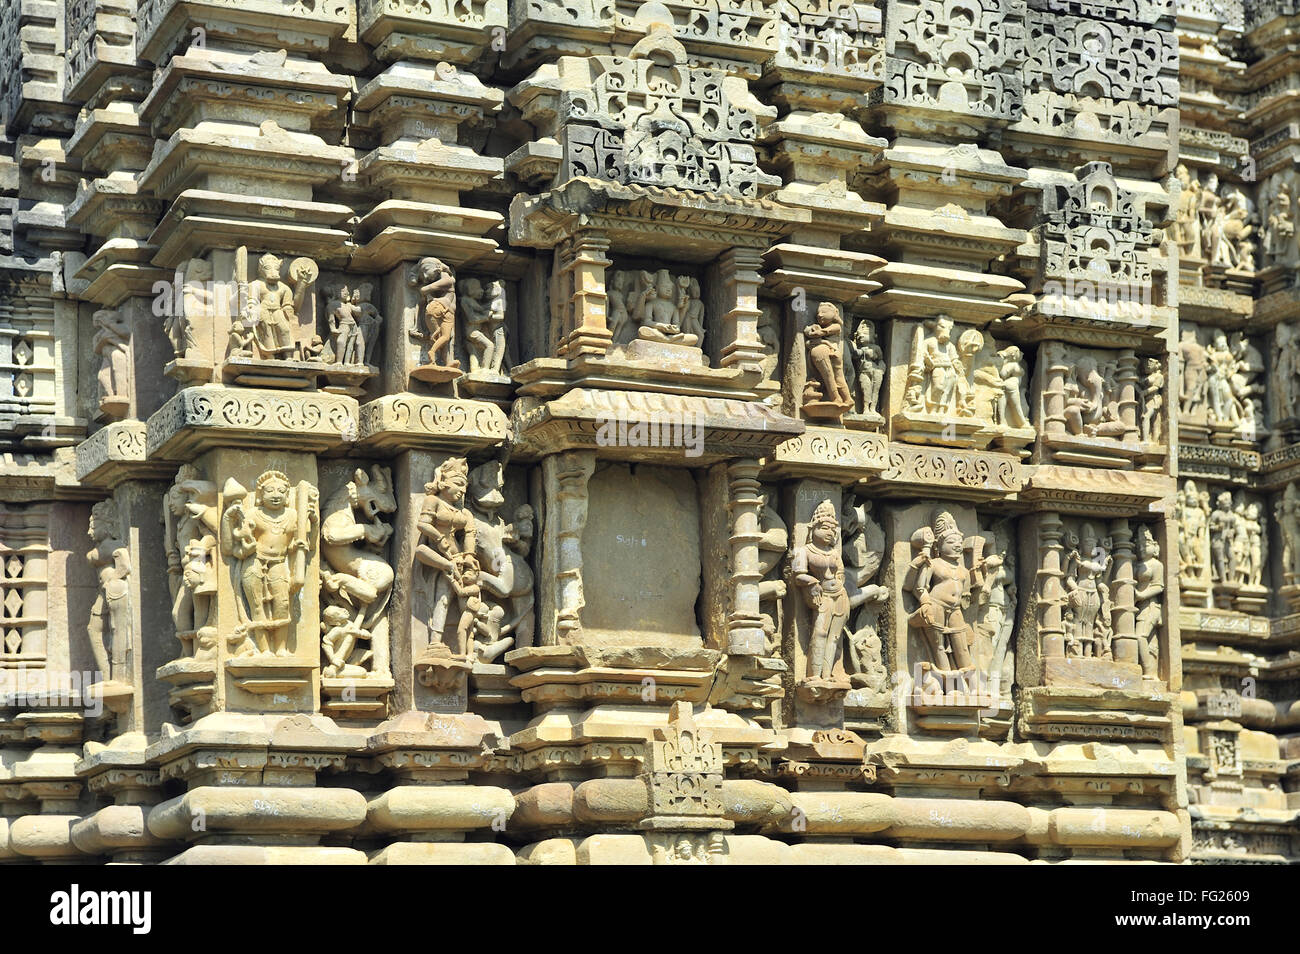 Sculpté orné de sculptures sur le mur de temple vishvanath Khajuraho Madhya Pradesh, Inde Banque D'Images